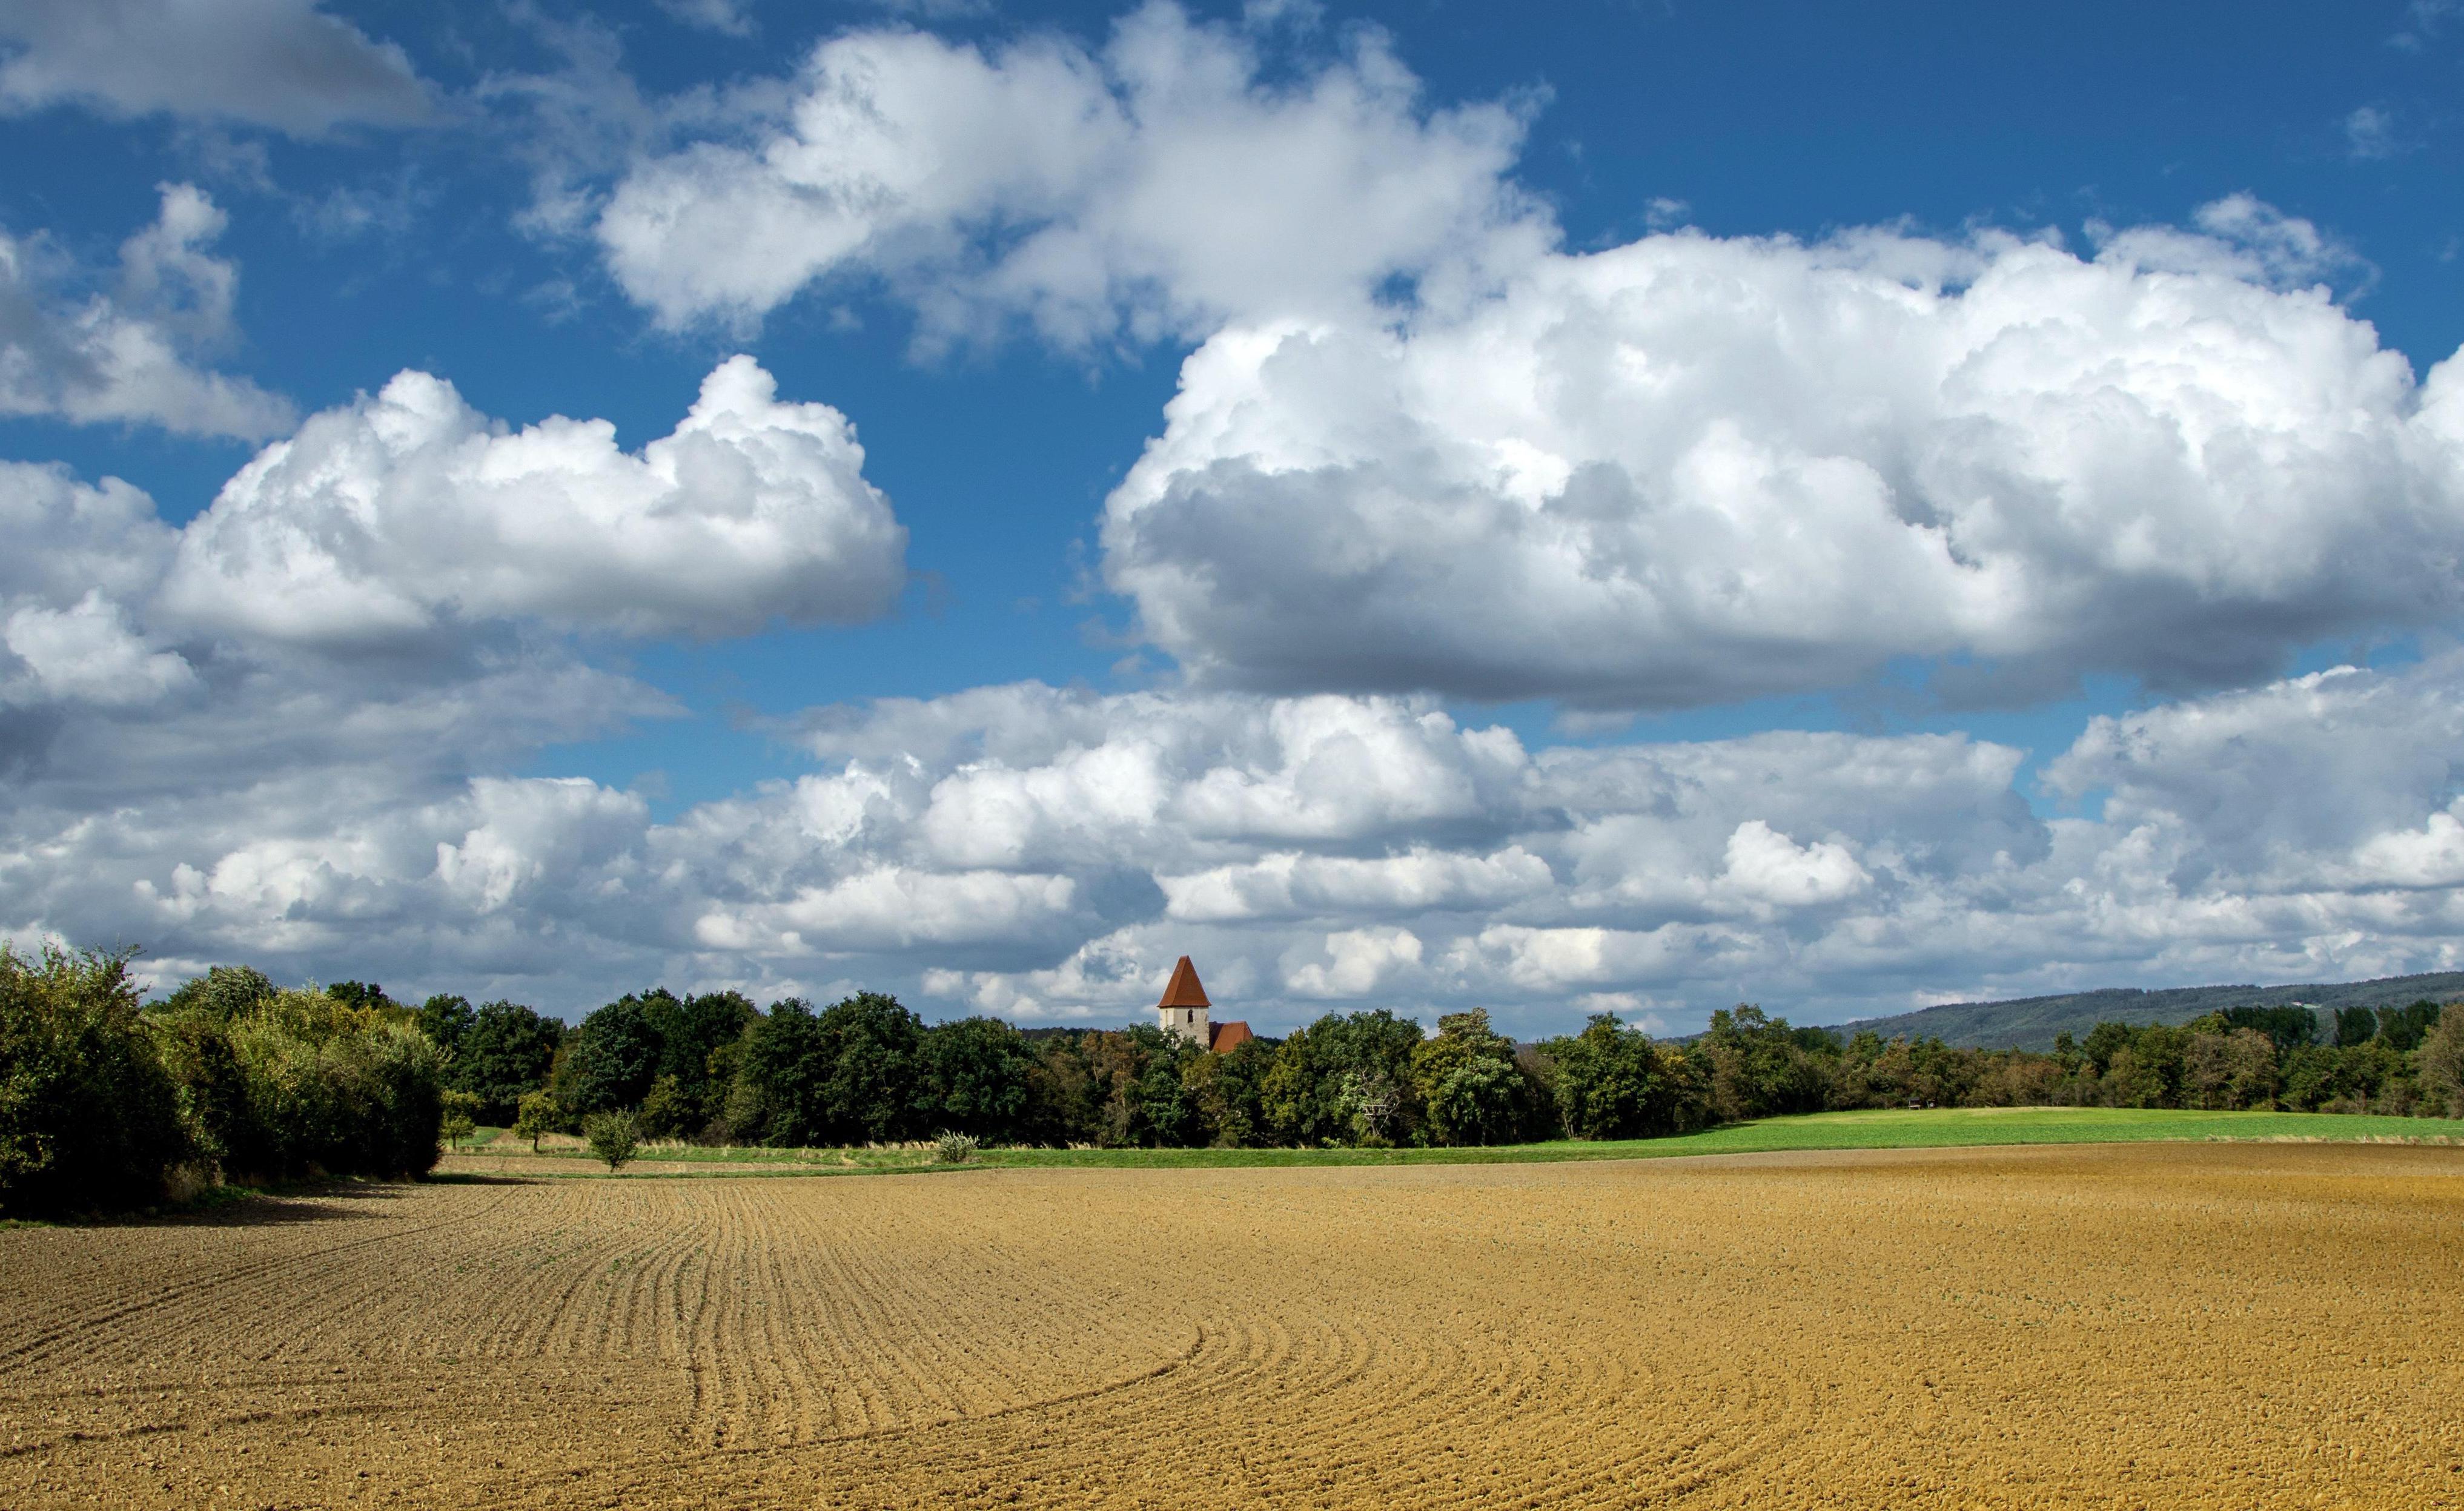 Agrarlandschaft - über die gesamte Bildbreite reichendes Feld vor einer Baumreihe, hinter der sich ein Dorf versteckt, welches nur durch einen Kirchturm angedeutet ist. Im Hintergrund blauer Himmel mit wenigen Wolken.